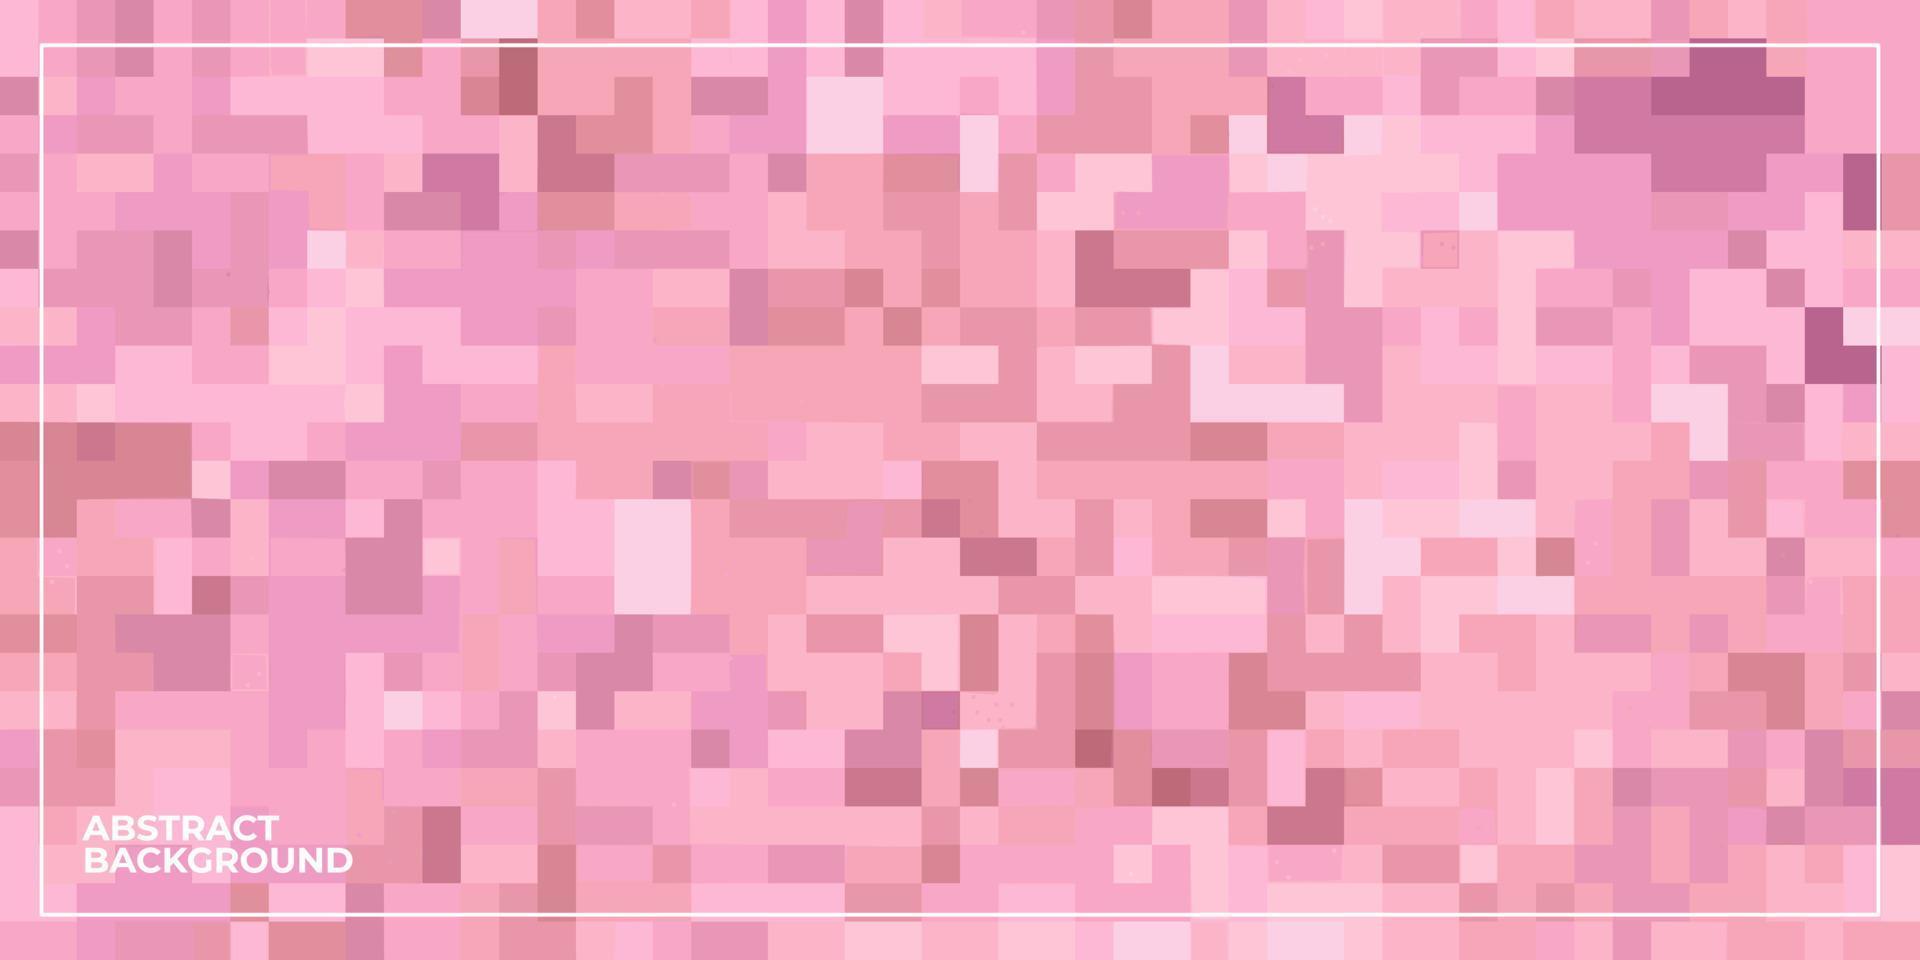 sfondo di mosaico piastrellato quadrato pixel geometrico astratto vettore